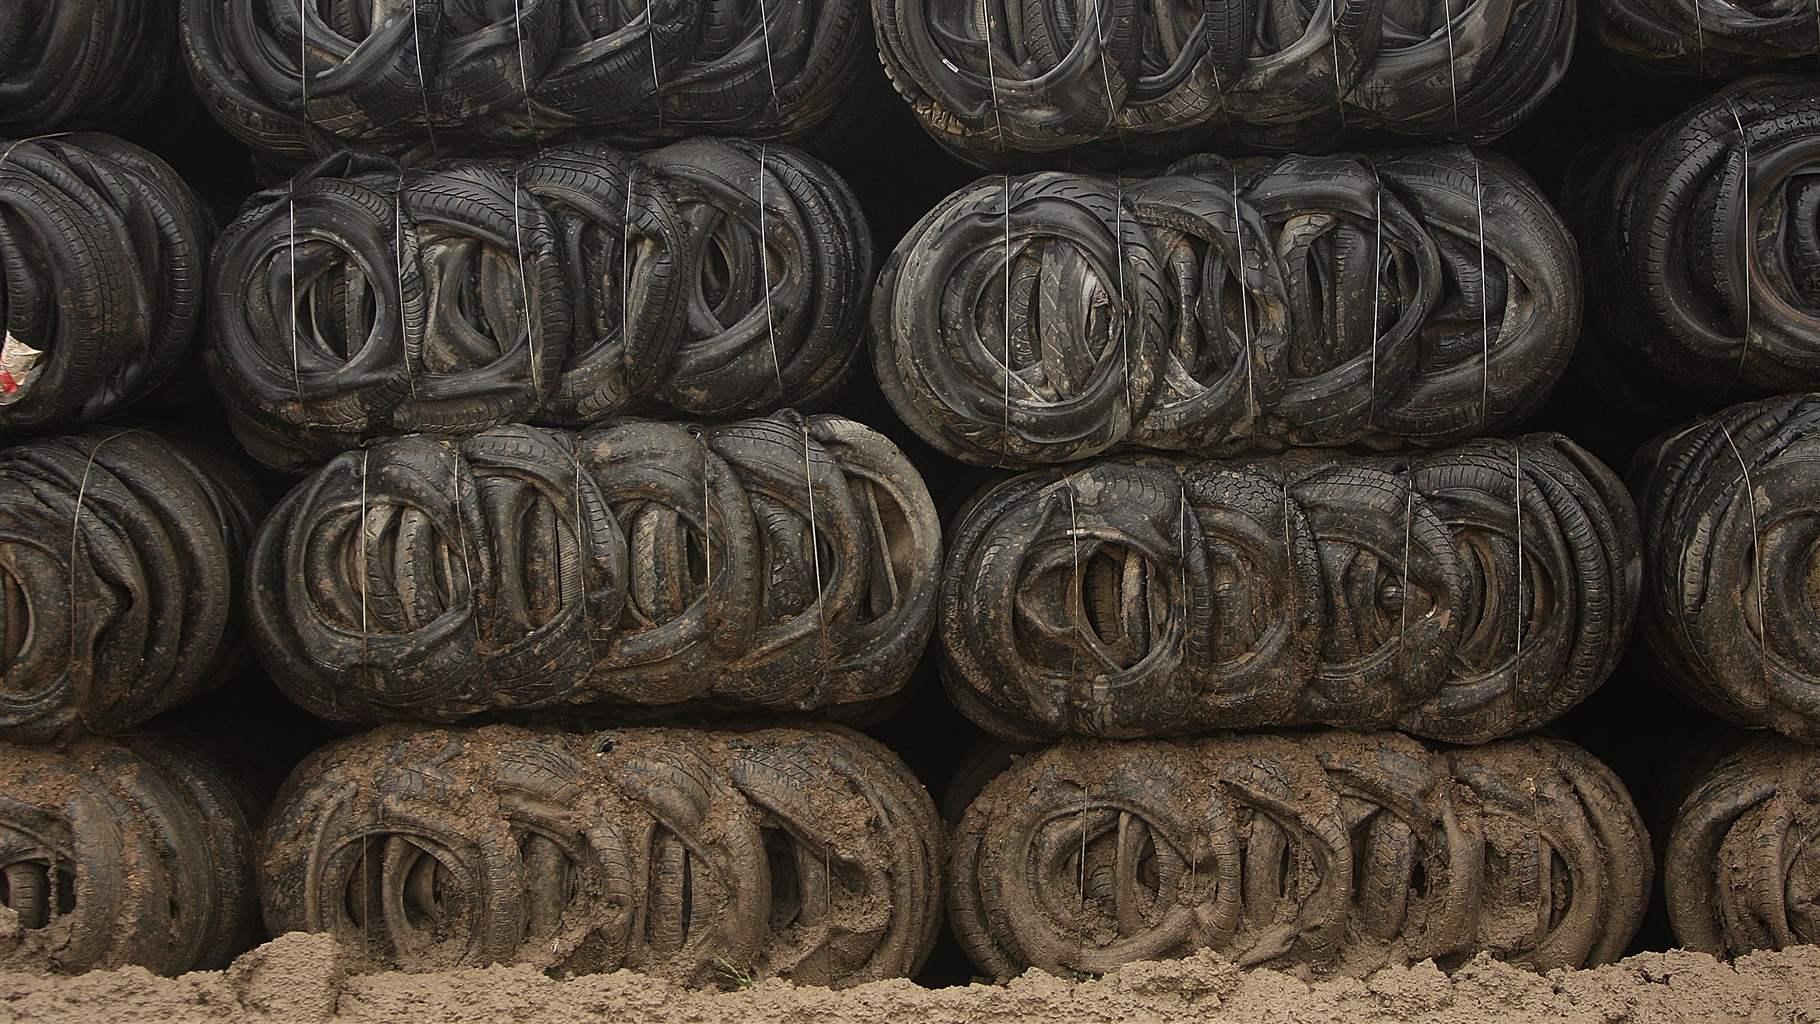 Bales of mud splashed tyres